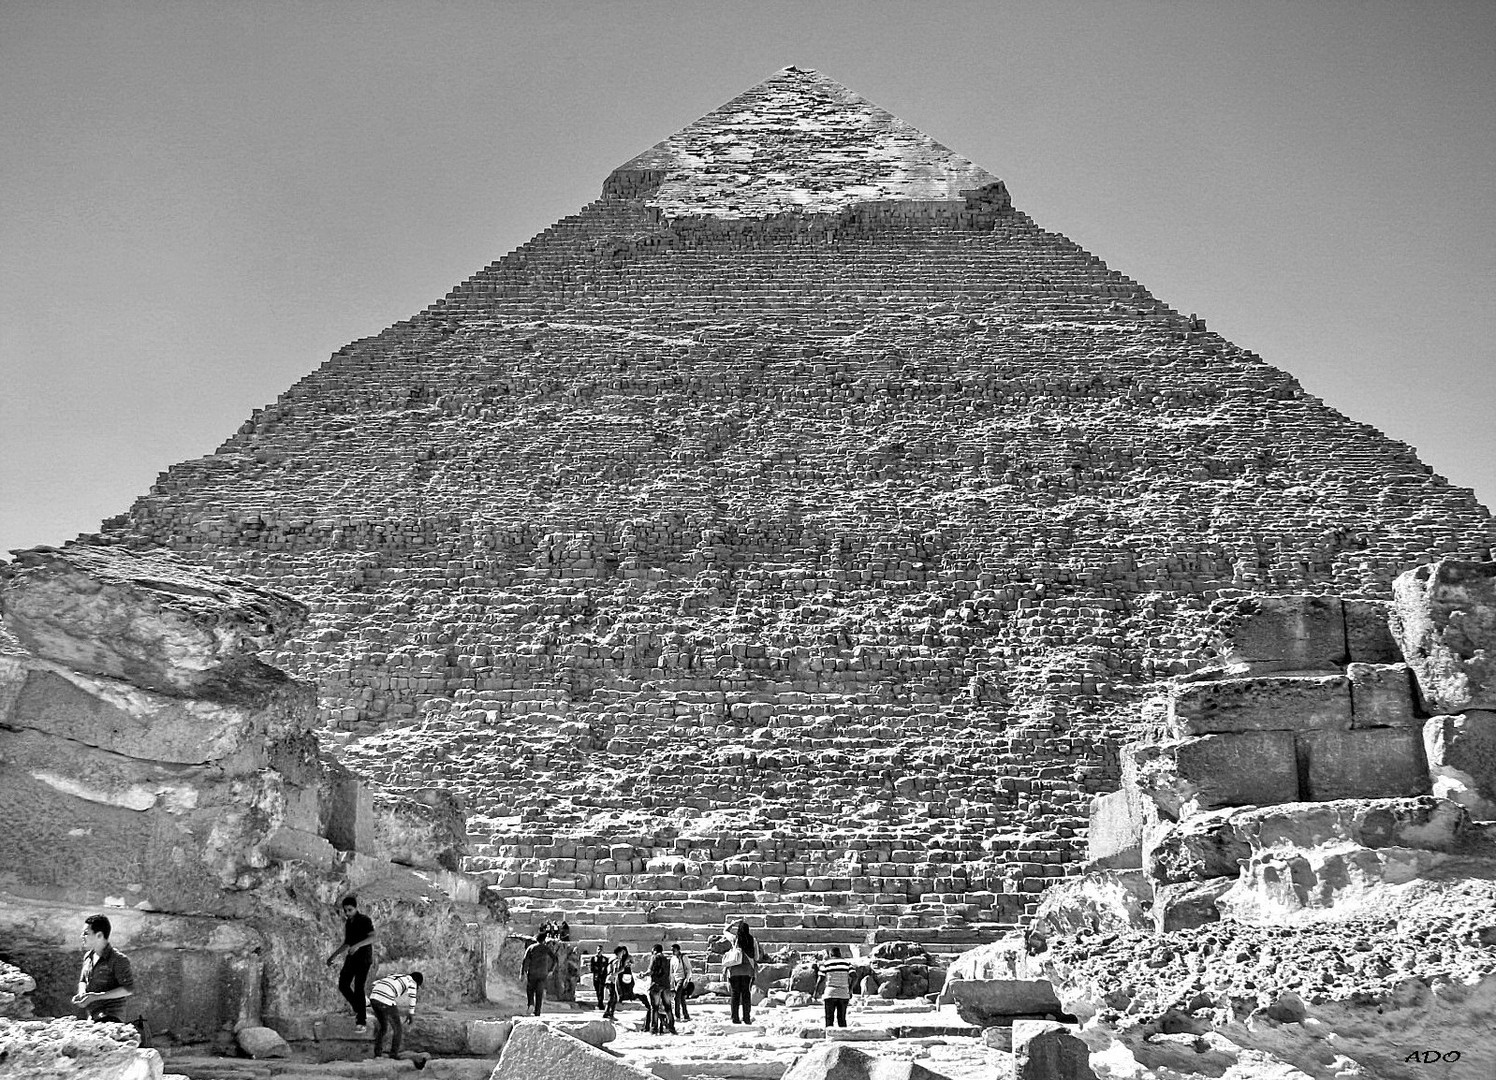 The Pyramid of Khafre